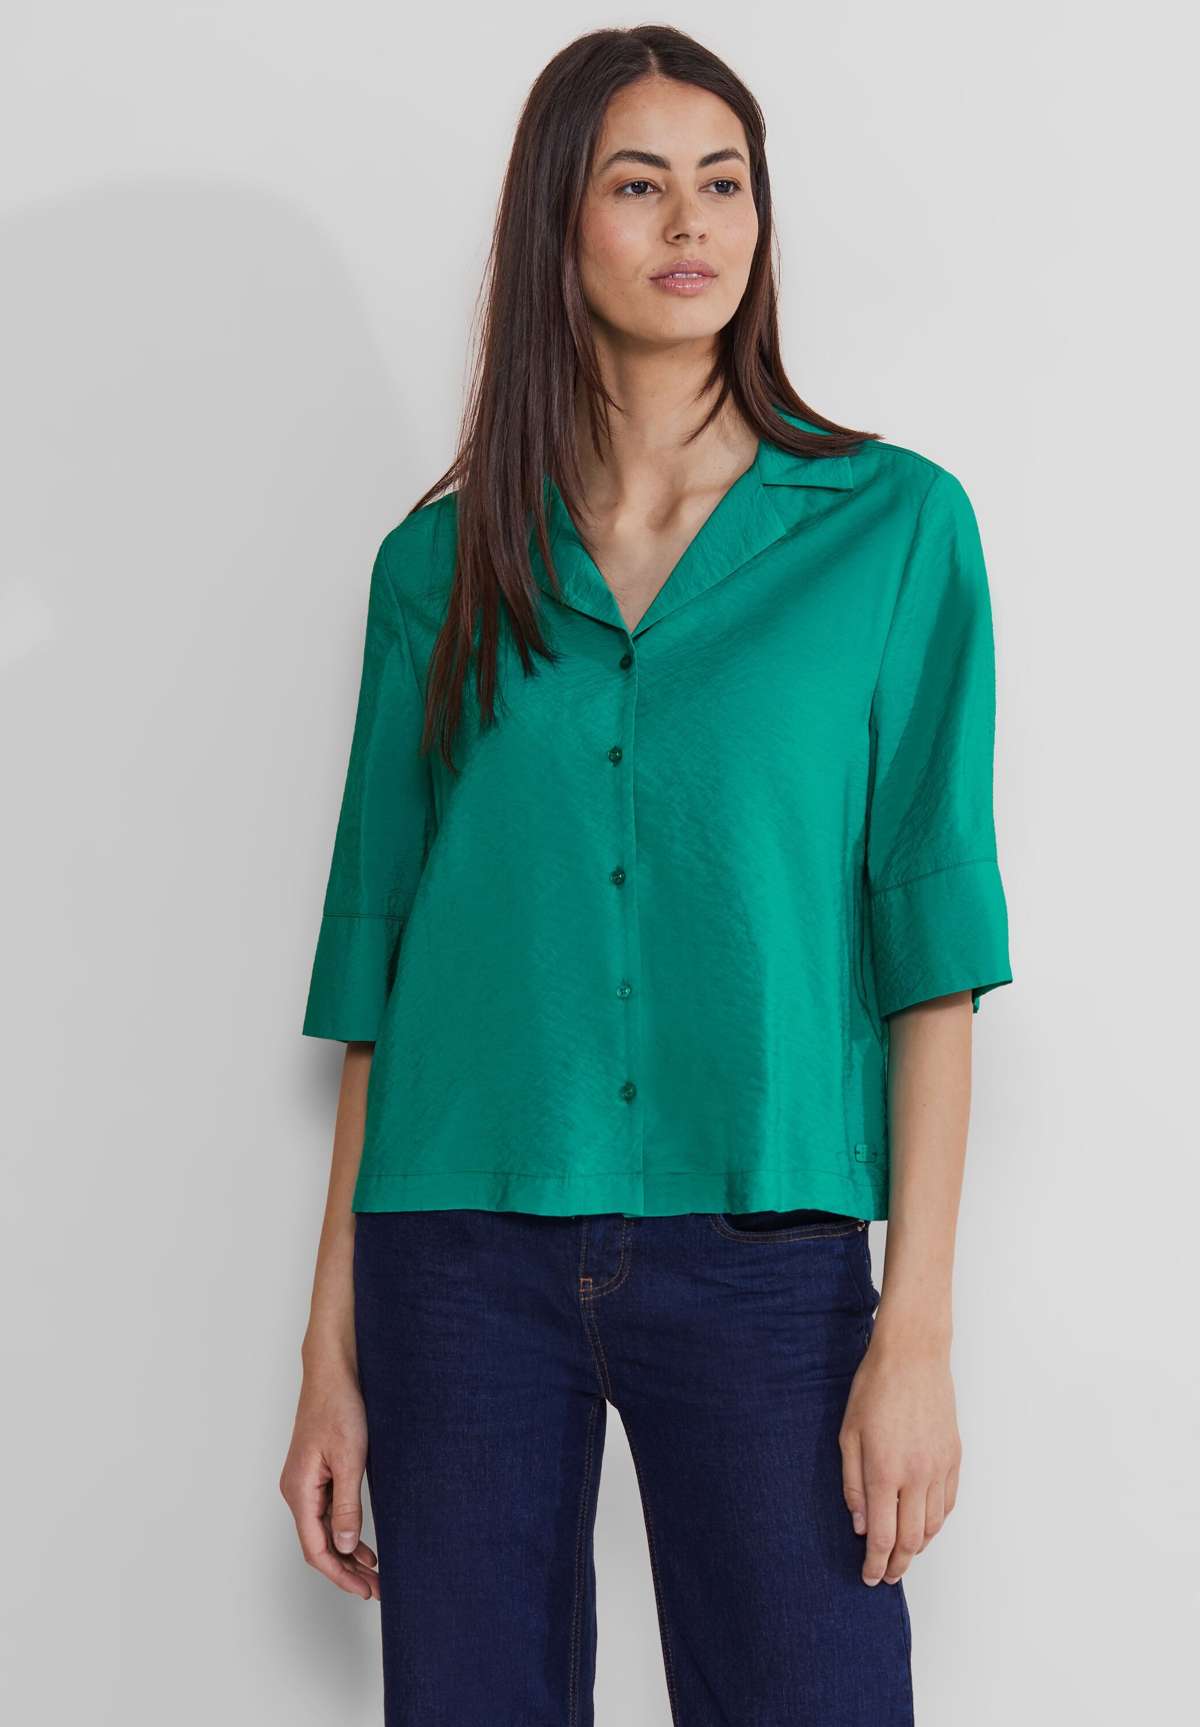 Блузка-рубашка из мягкой смеси материалов.